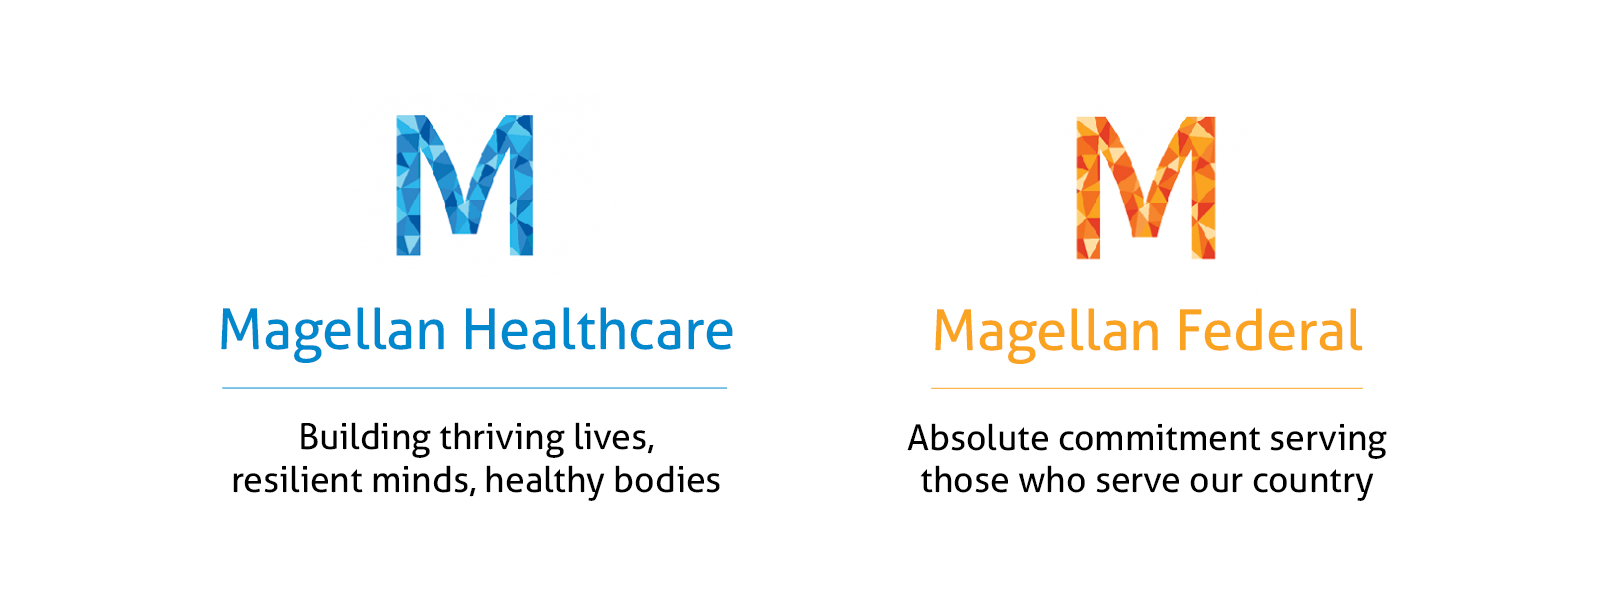 Magellan Health: impulsado para navegar por trayectos sanitarios complejos. ilustración